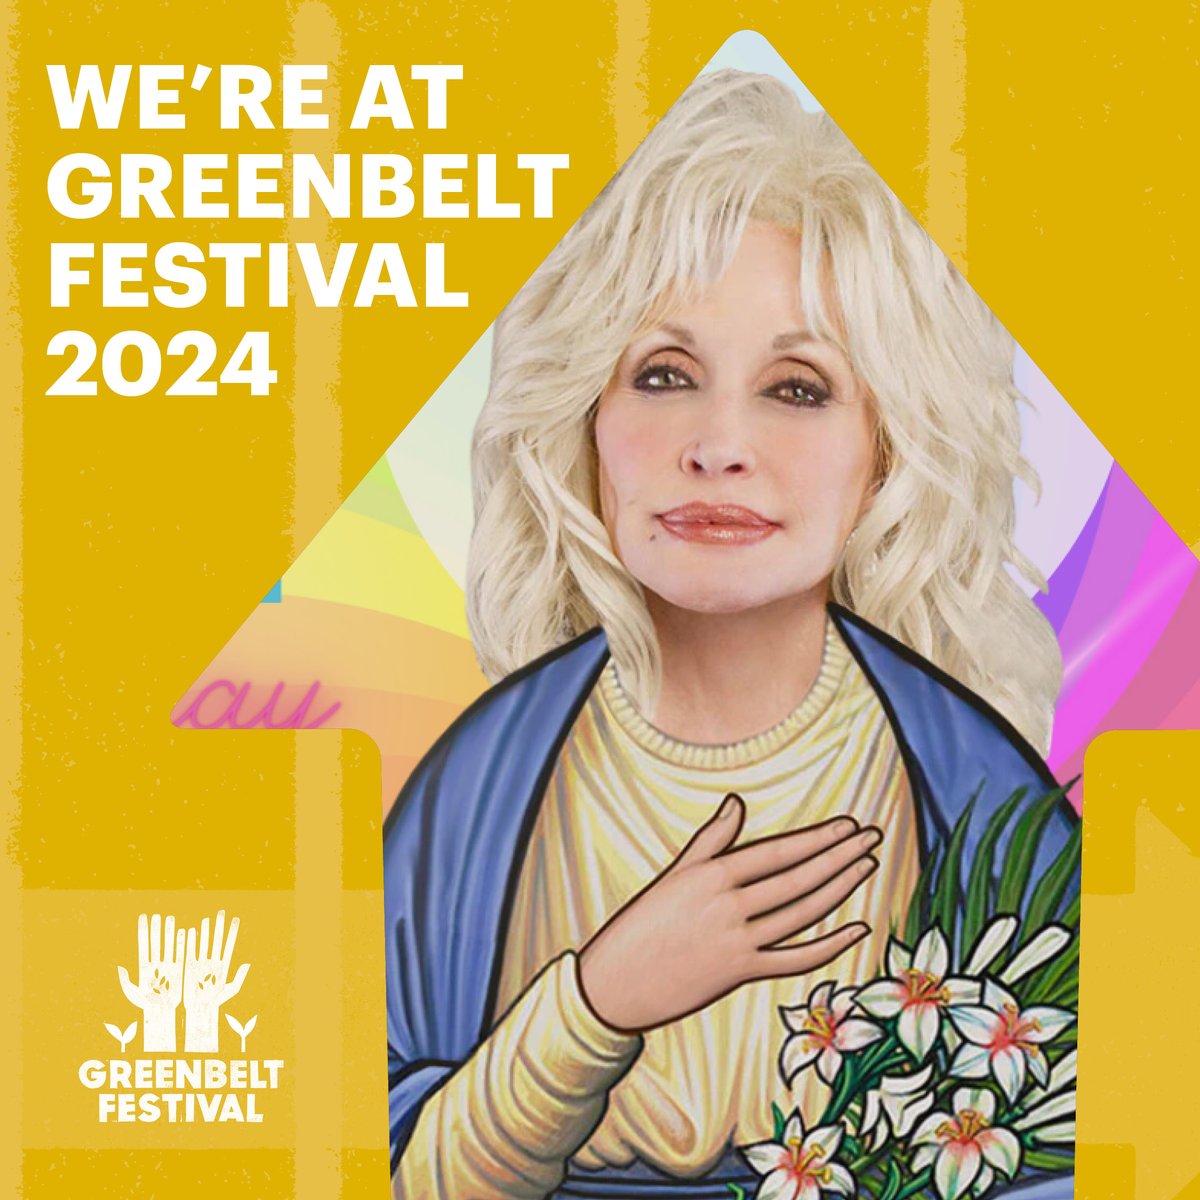 Big News! We're bringing #DollyChurch to Greenbelt Festival this summer ya'll! Full line up announced today ... which includes us!  #gb2 @eeekfreek @FlamyGrant @DollyParton @RevTreyHall @greenbelt @SouthsideDist @MethodistGB @HopeAnchorMedia